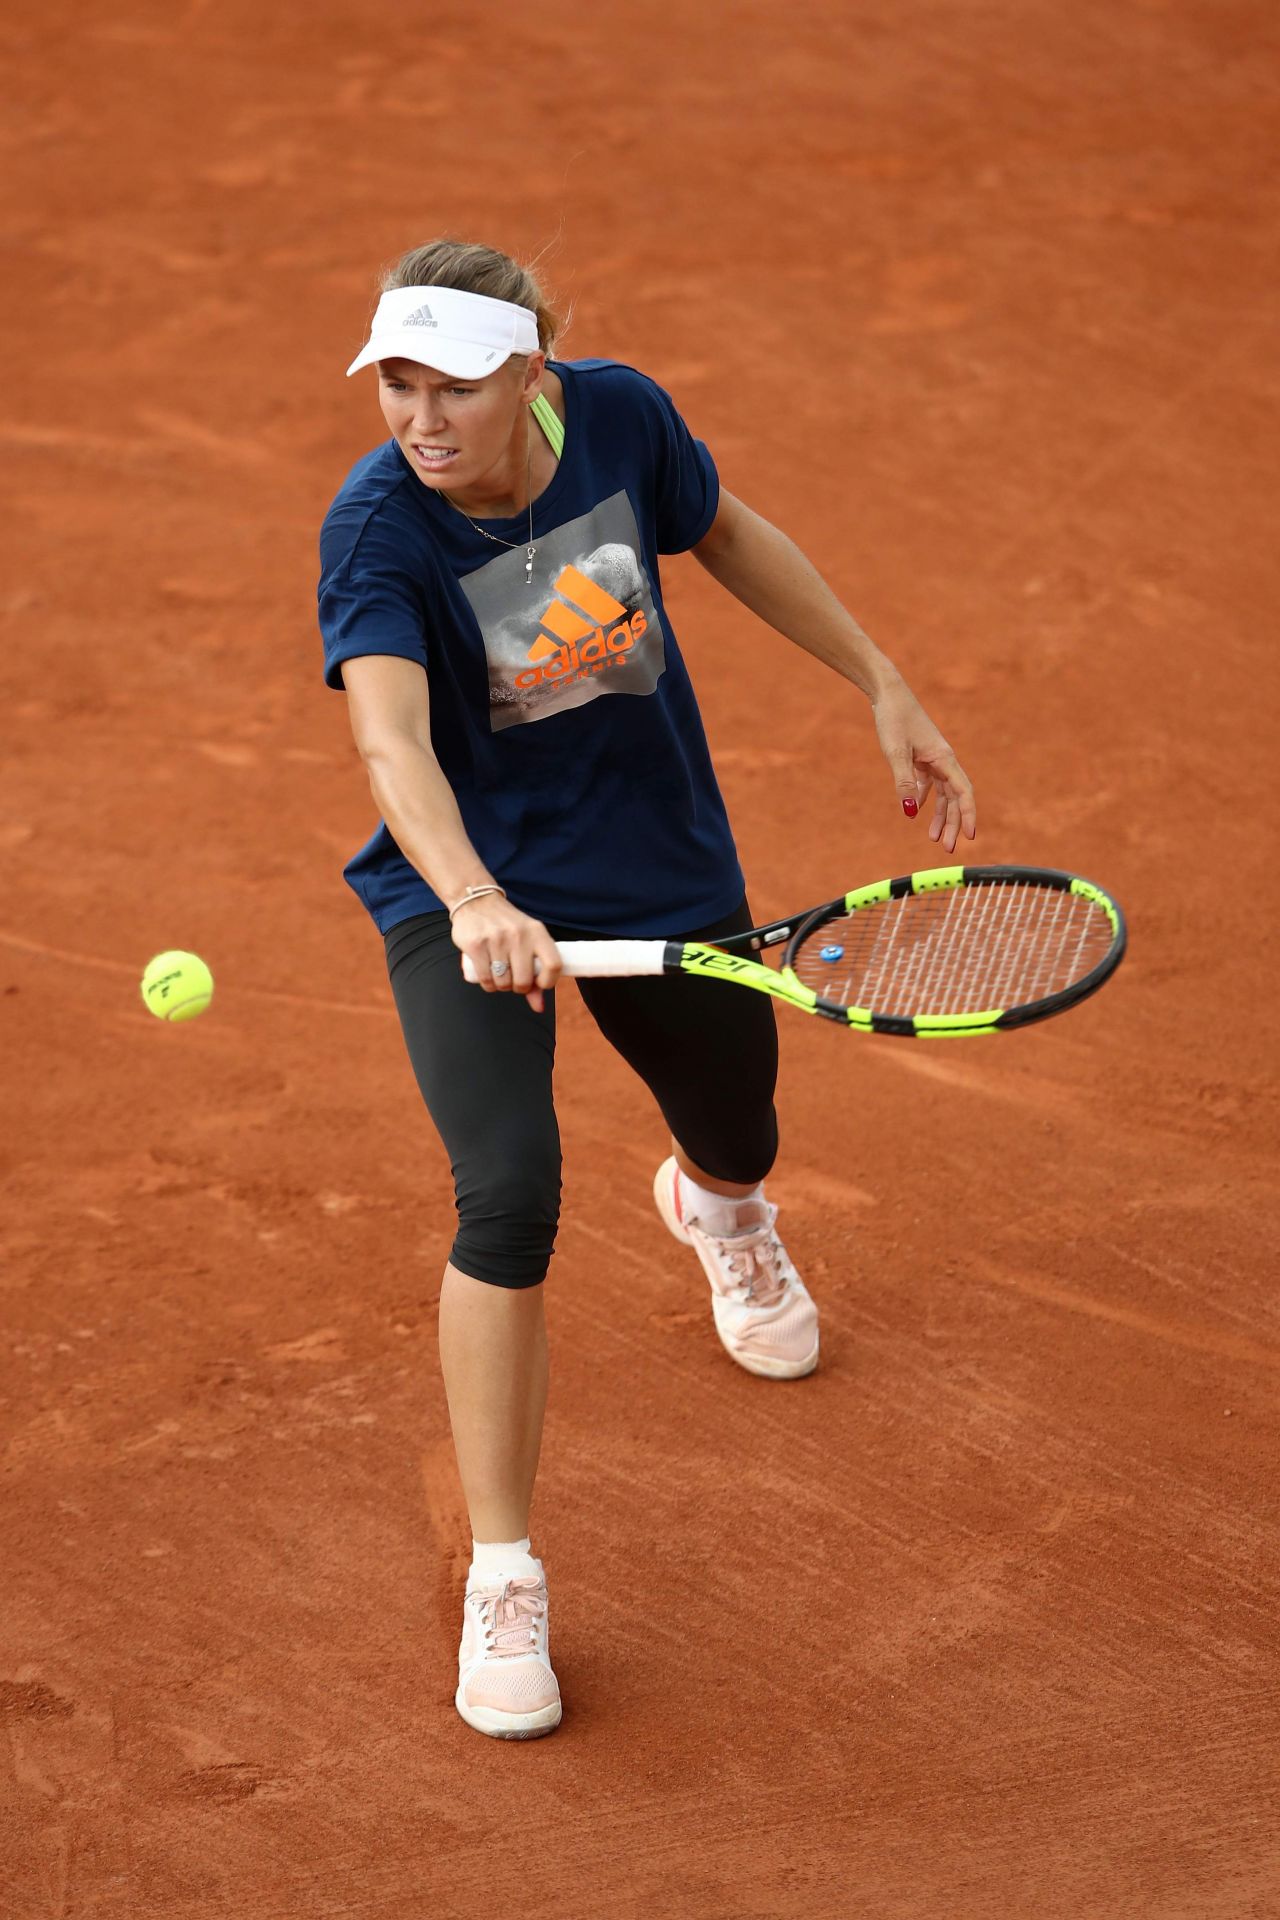 Caroline Wozniacki - Practices at Roland-Garros Stadium in Paris 05/25/20181280 x 1920